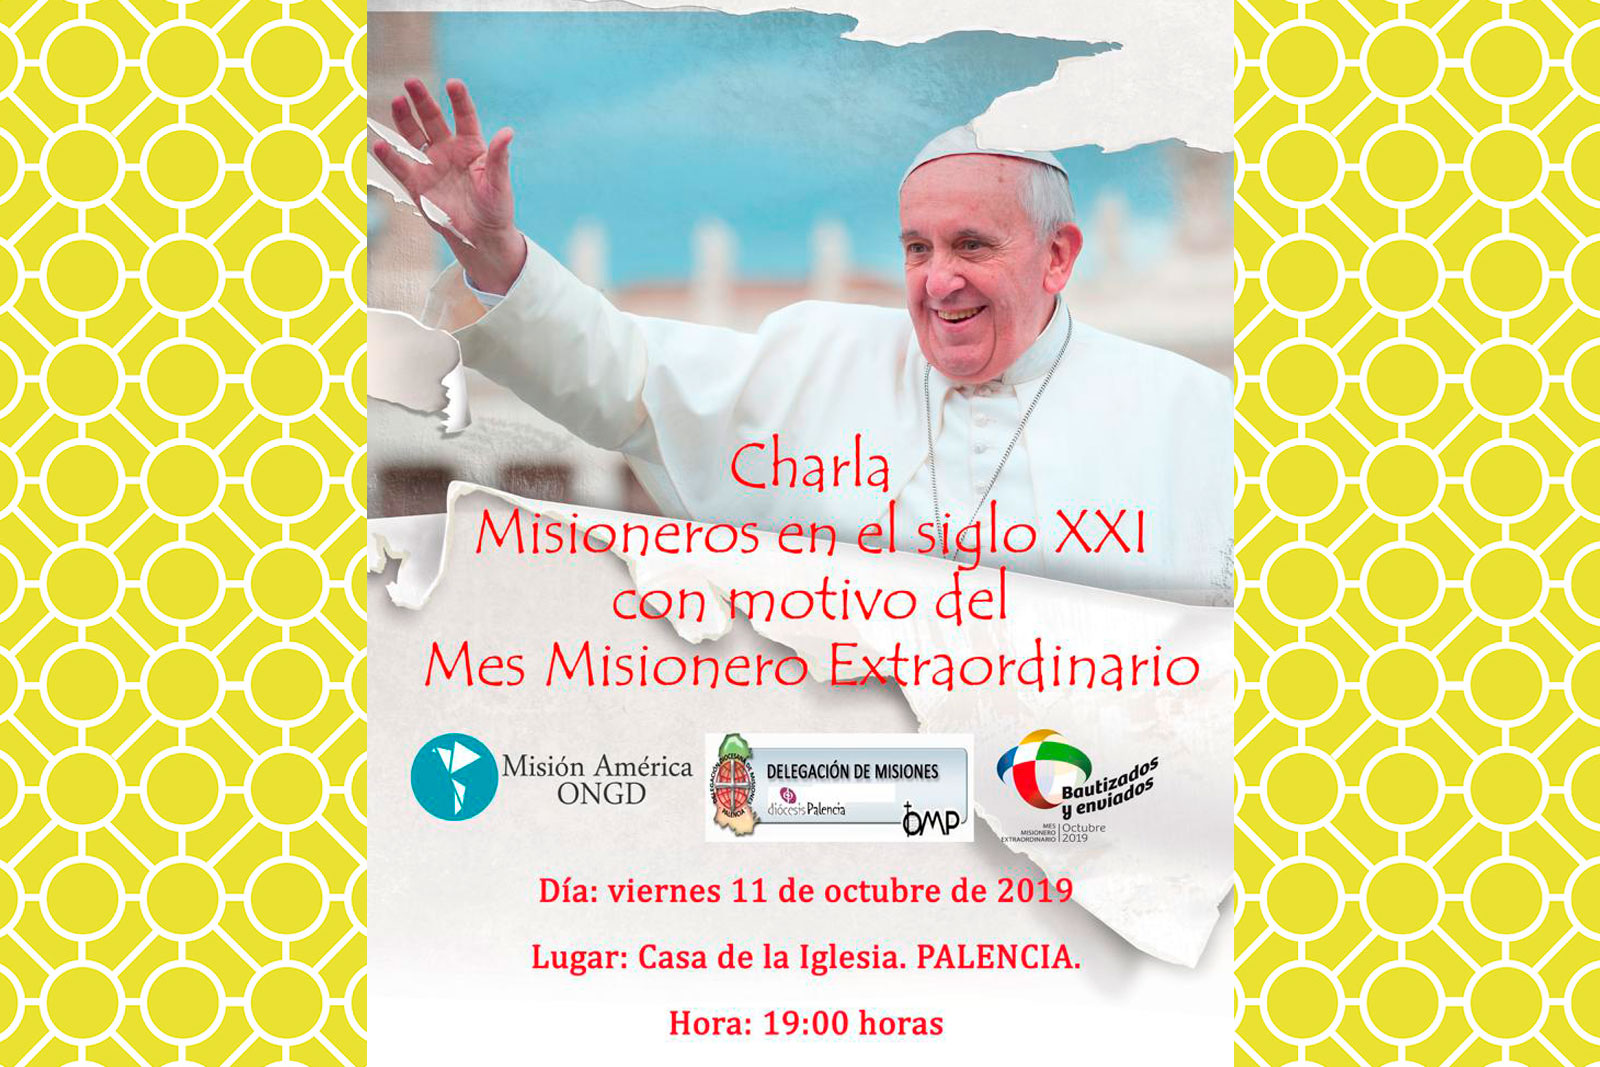 Diócesis de Palencia - Misioneros en el Siglo XXI